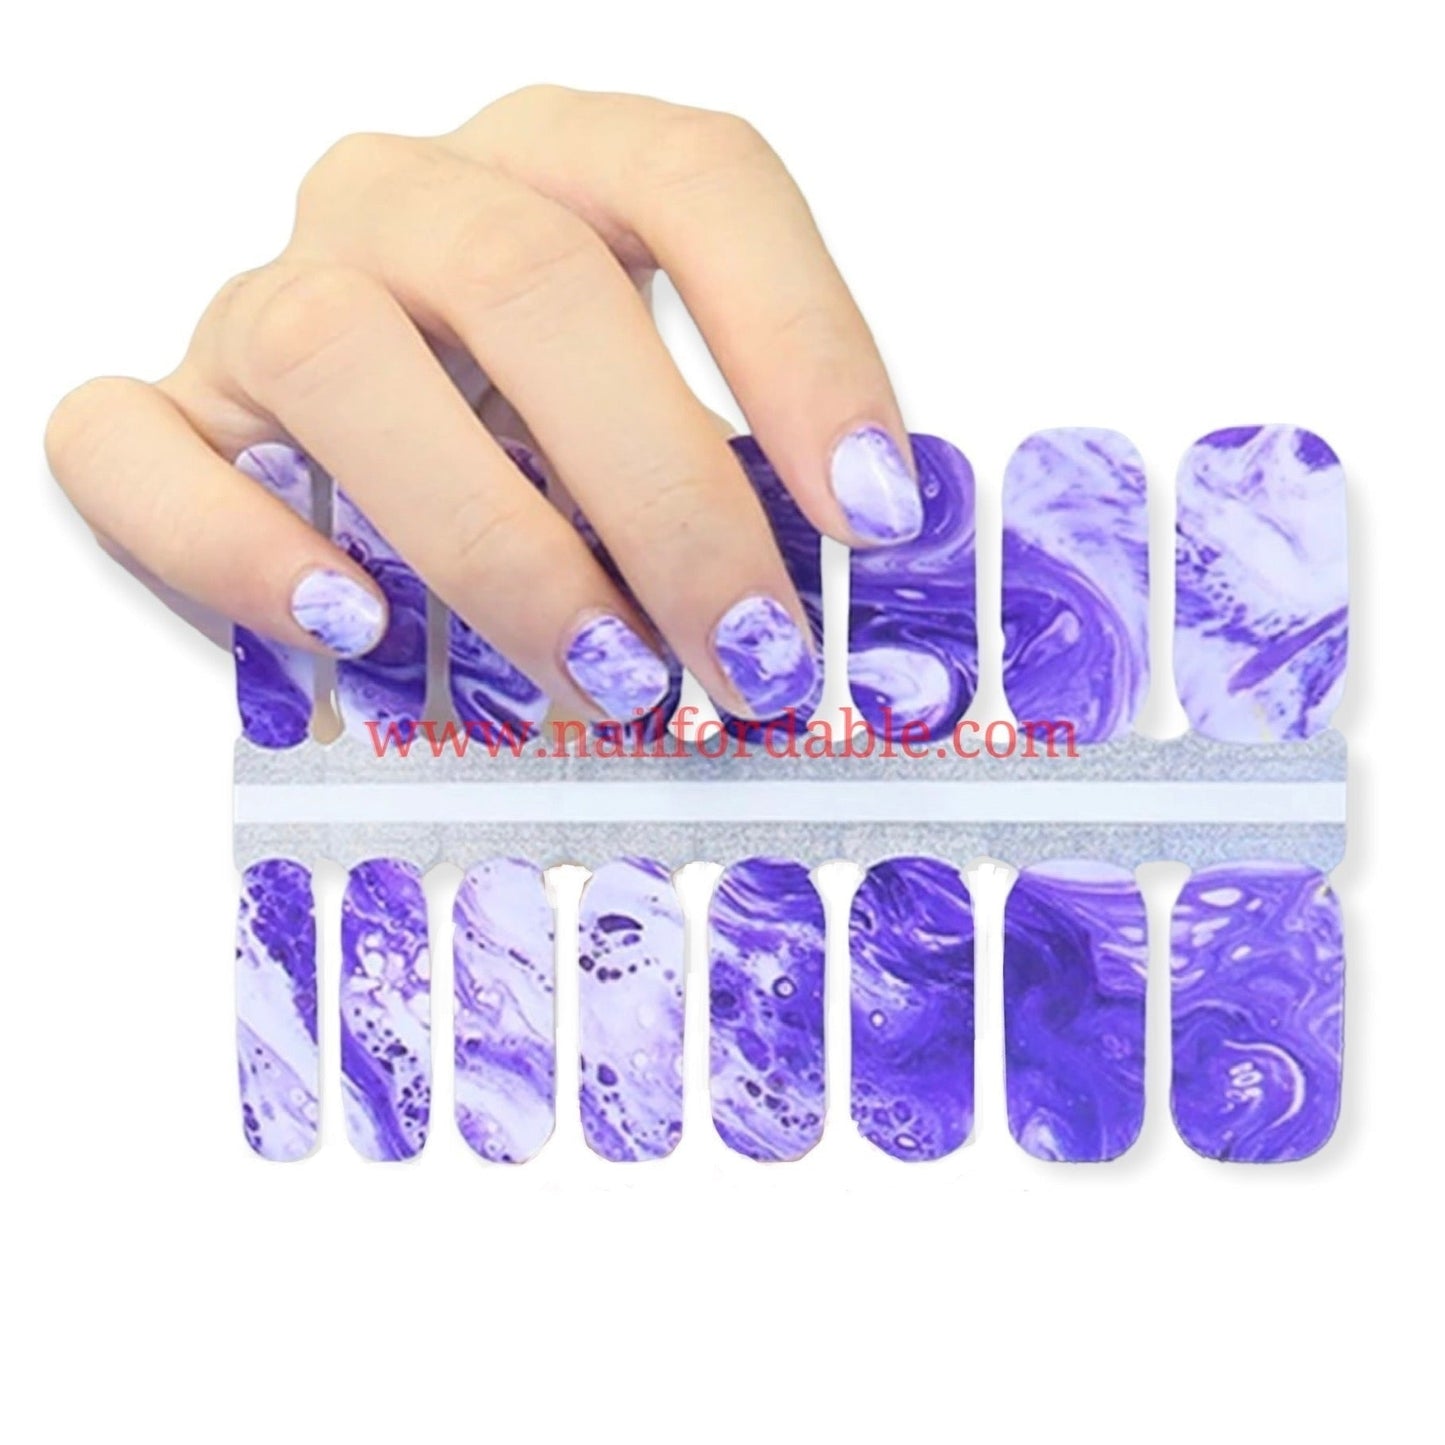 Purple granite Nail Wraps | Semi Cured Gel Wraps | Gel Nail Wraps |Nail Polish | Nail Stickers